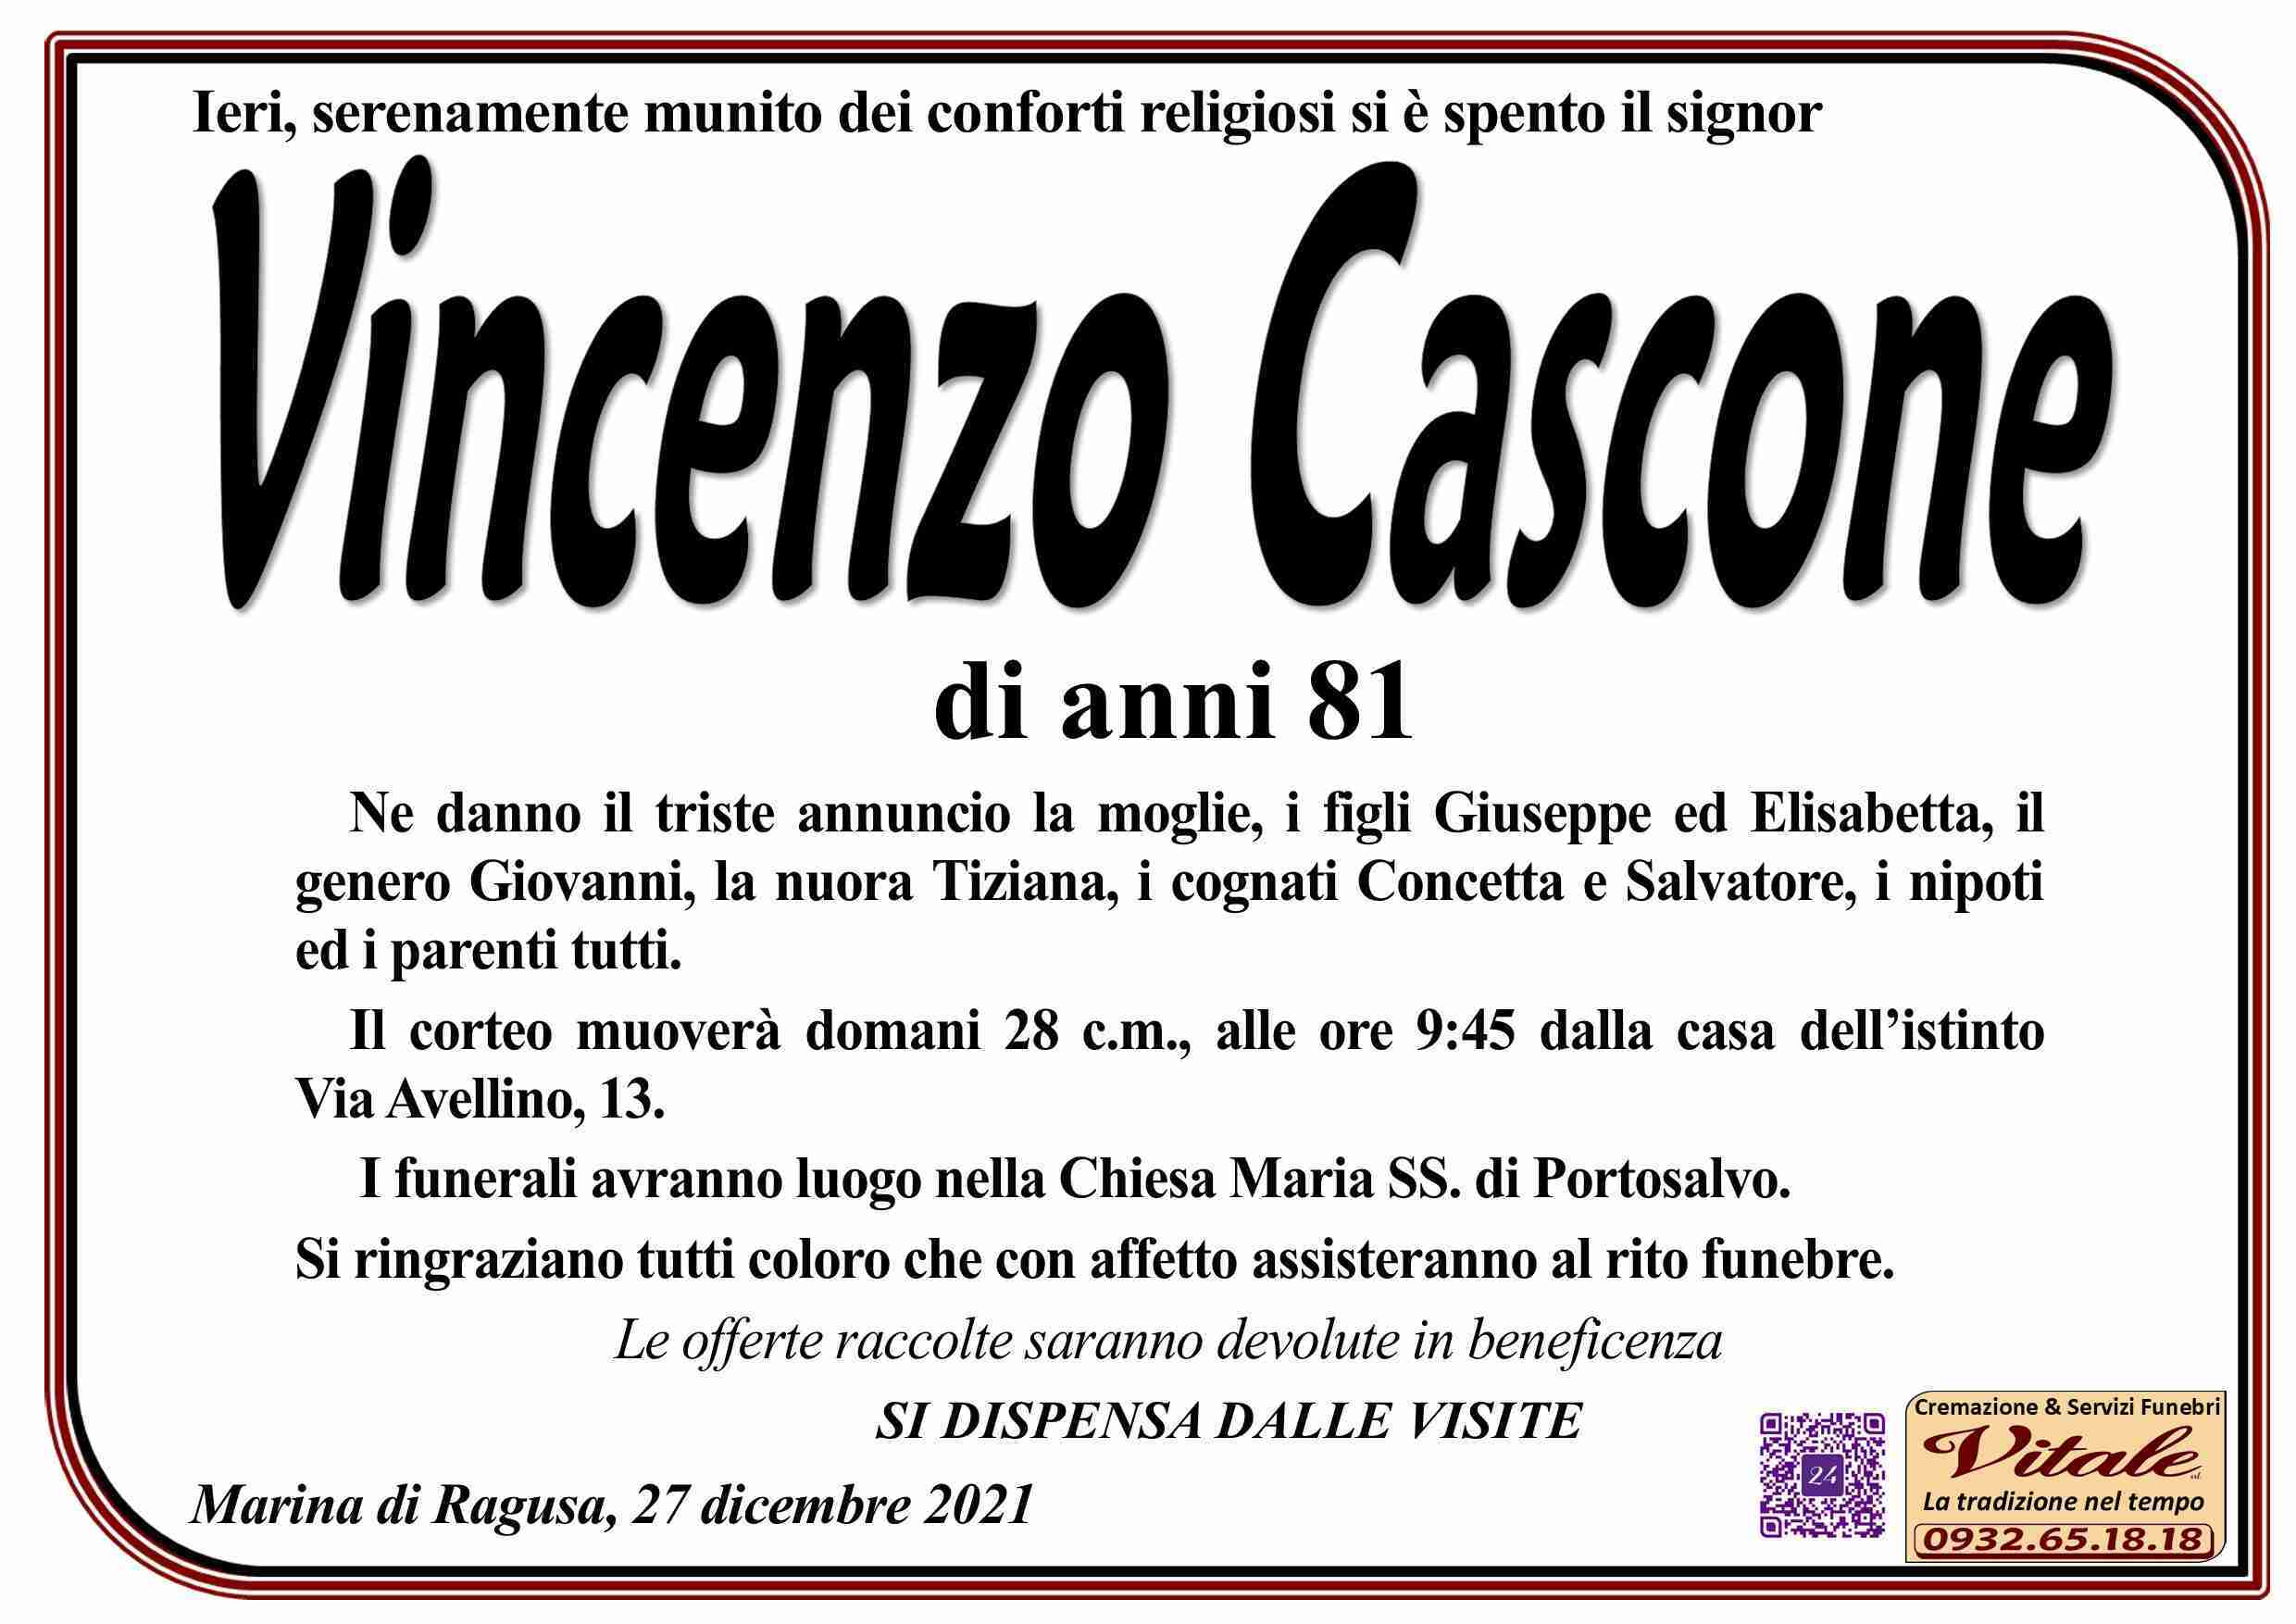 Vincenzo Cascone